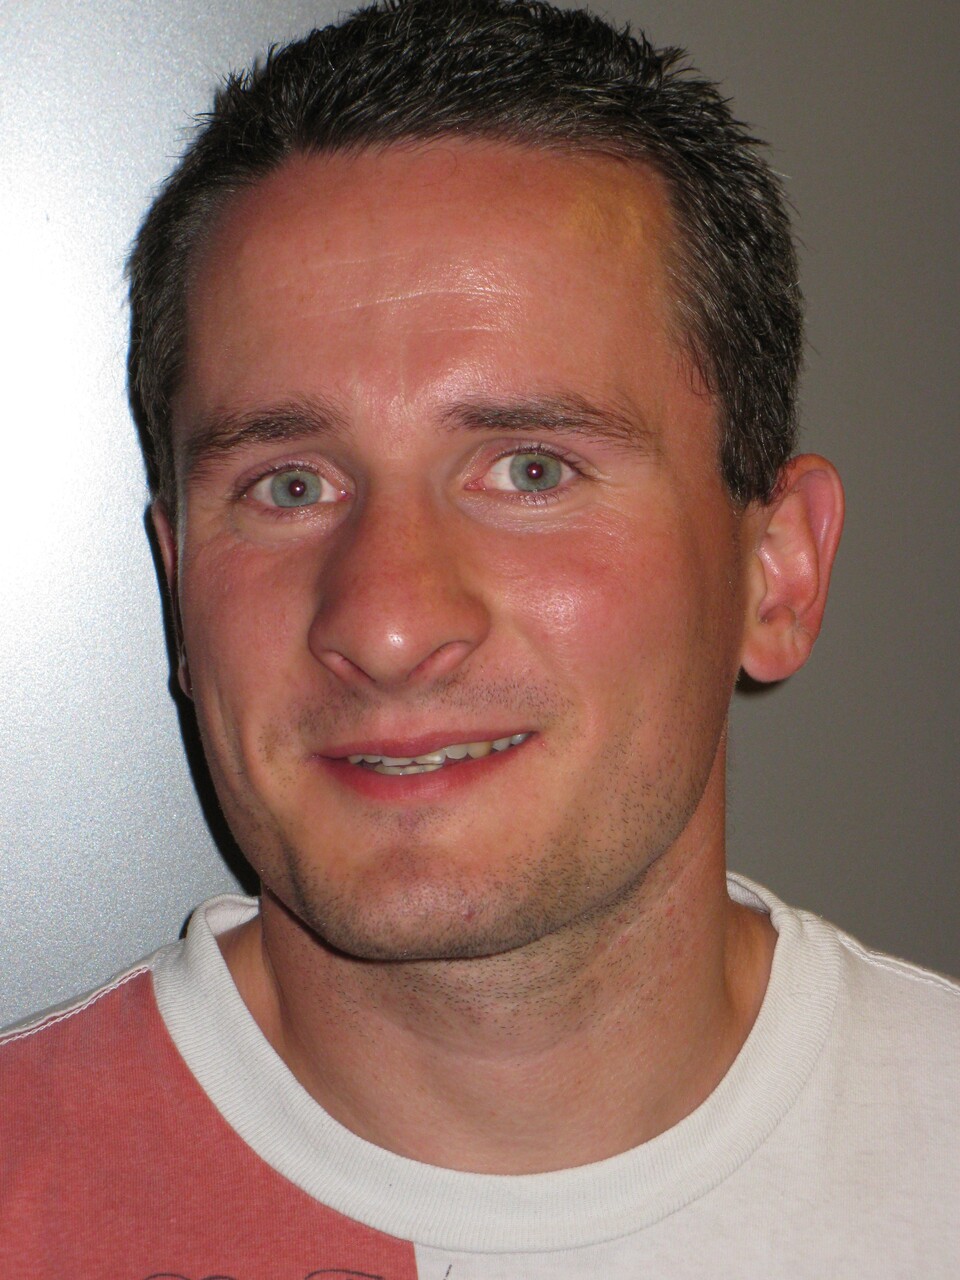 Marek Brunner ist Leiter der USK-Testabteilung und selbst leidenschaftlicher Computerspieler.